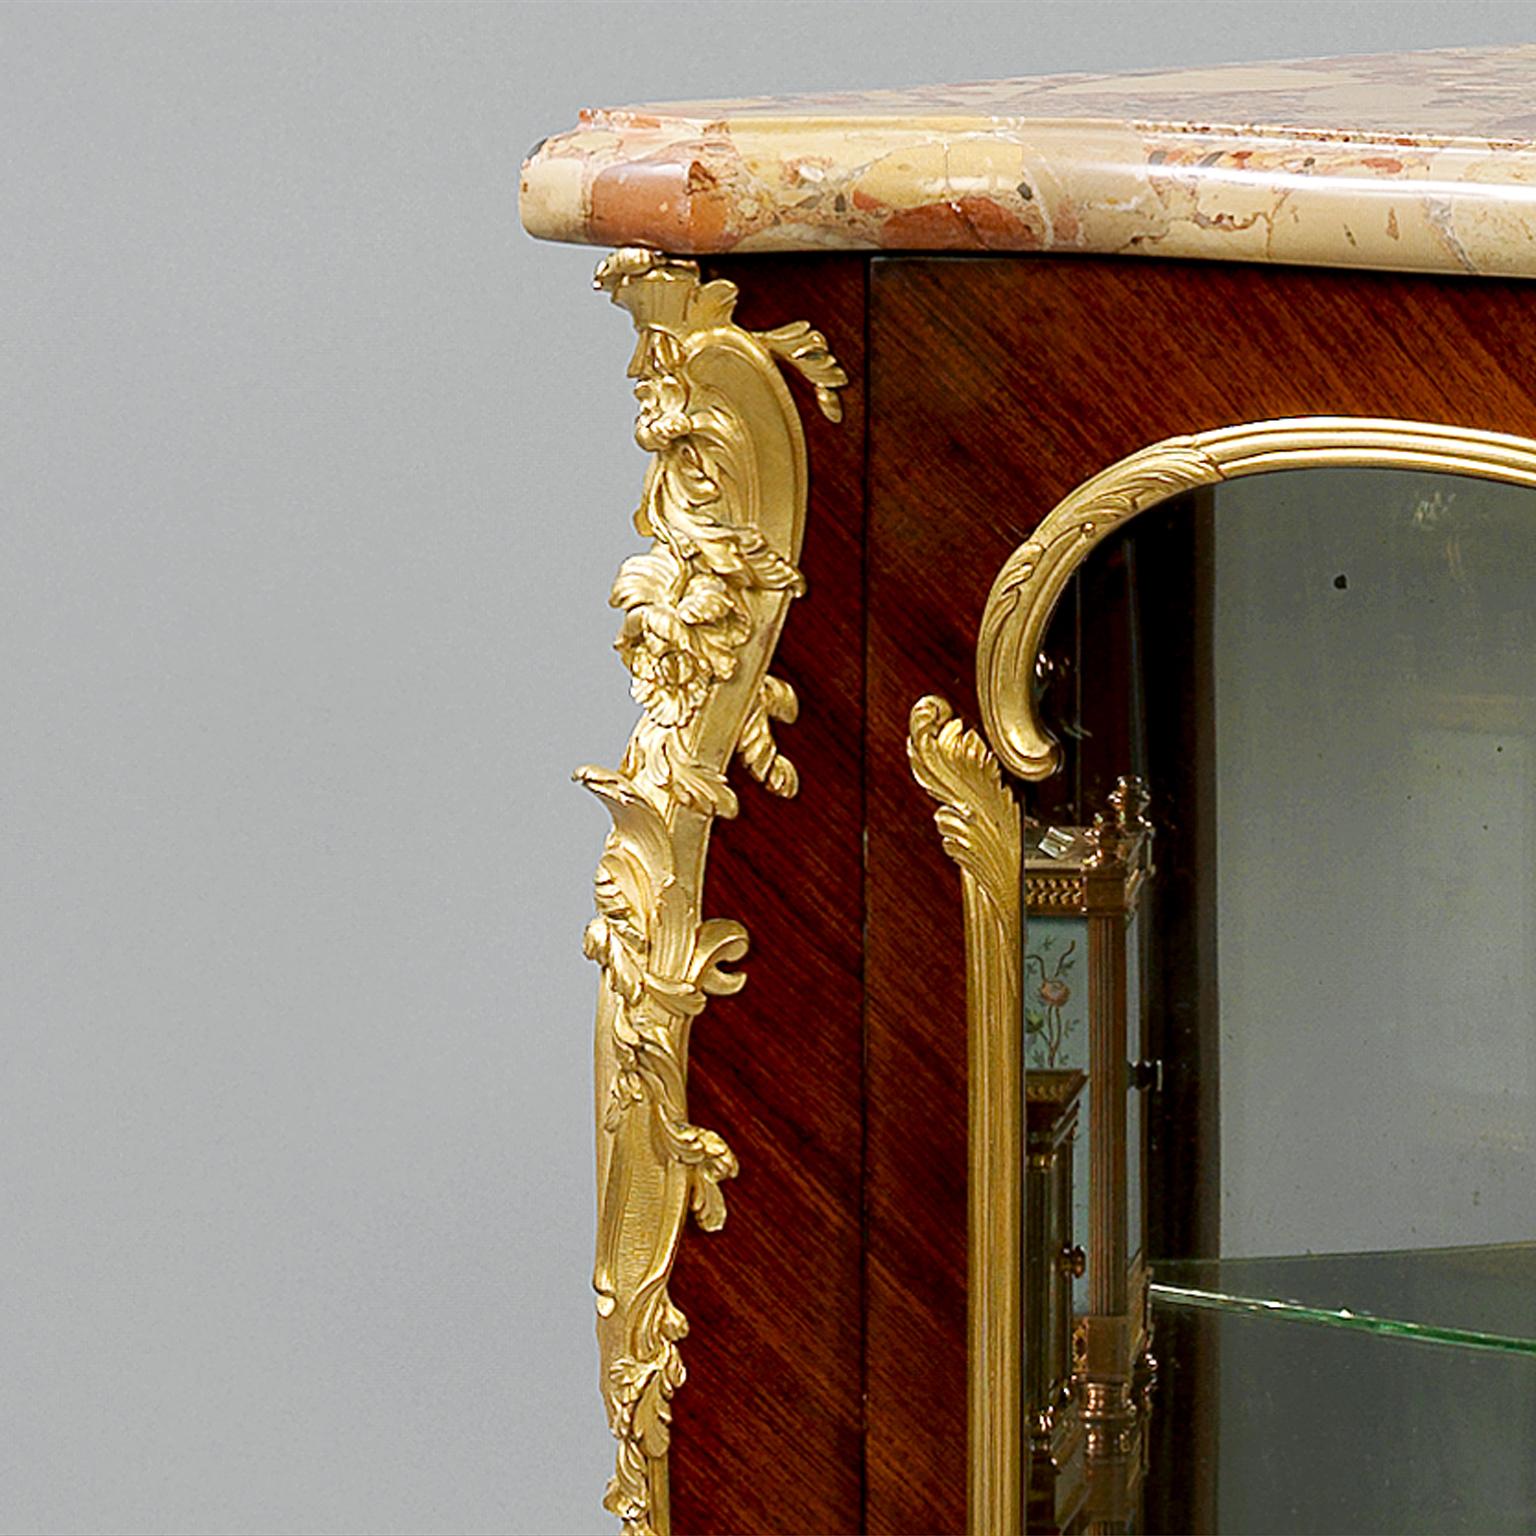 Eine feine, in vergoldeter Bronze gefasste Petit-Eckvitrine im Stil Louis XV von François Linke.

Die vergoldeten Bronzebeschläge sind auf der Rückseite mit 